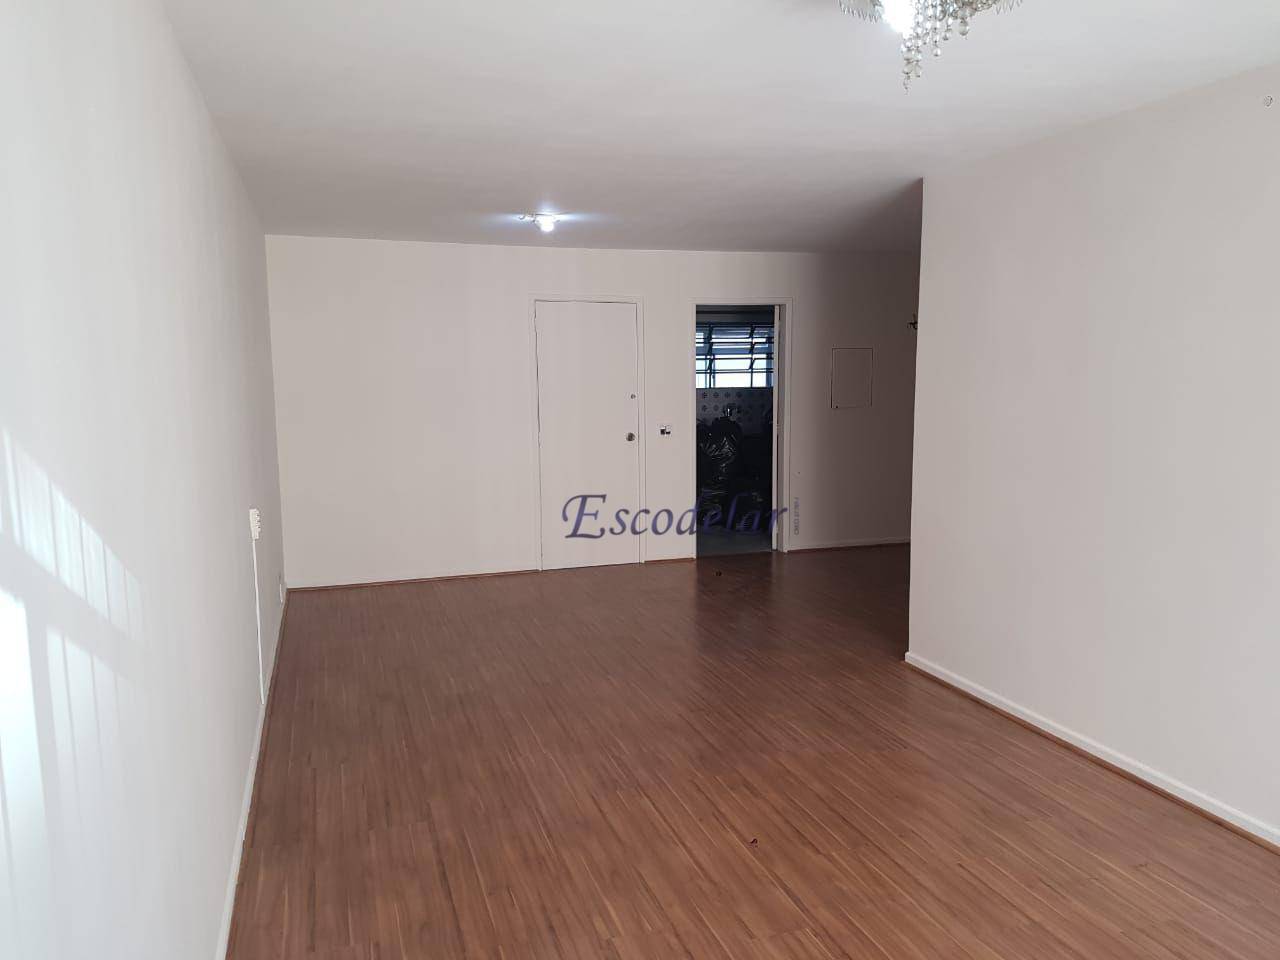 Apartamento com 4 dormitórios à venda, 120 m² por R$ 1.020.000,00 - Itaim Bibi - São Paulo/SP